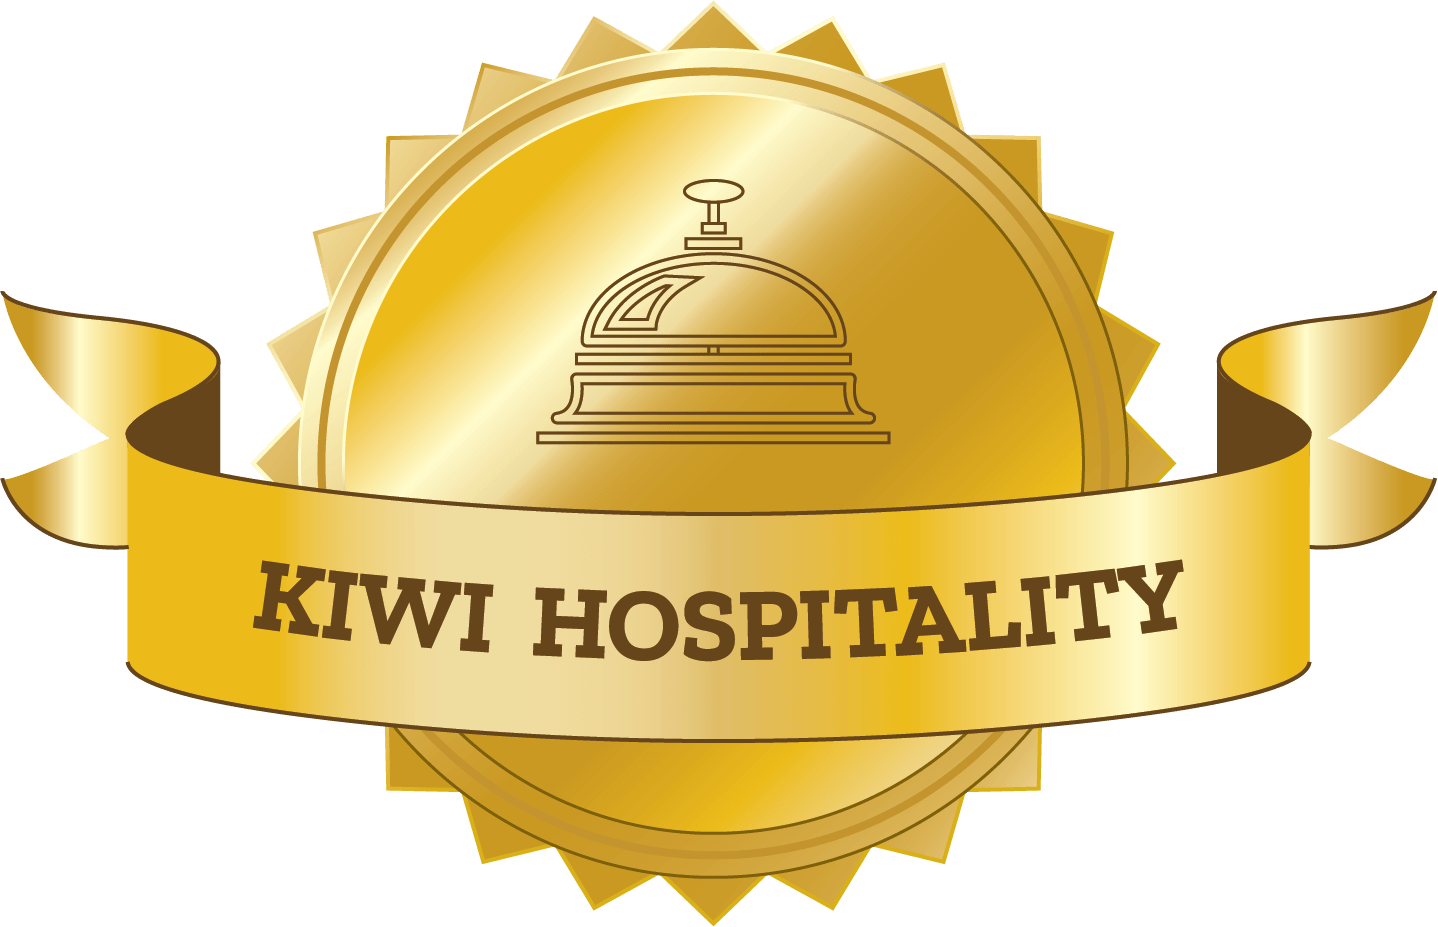 New Zealand - world famous kiwi hosptiality